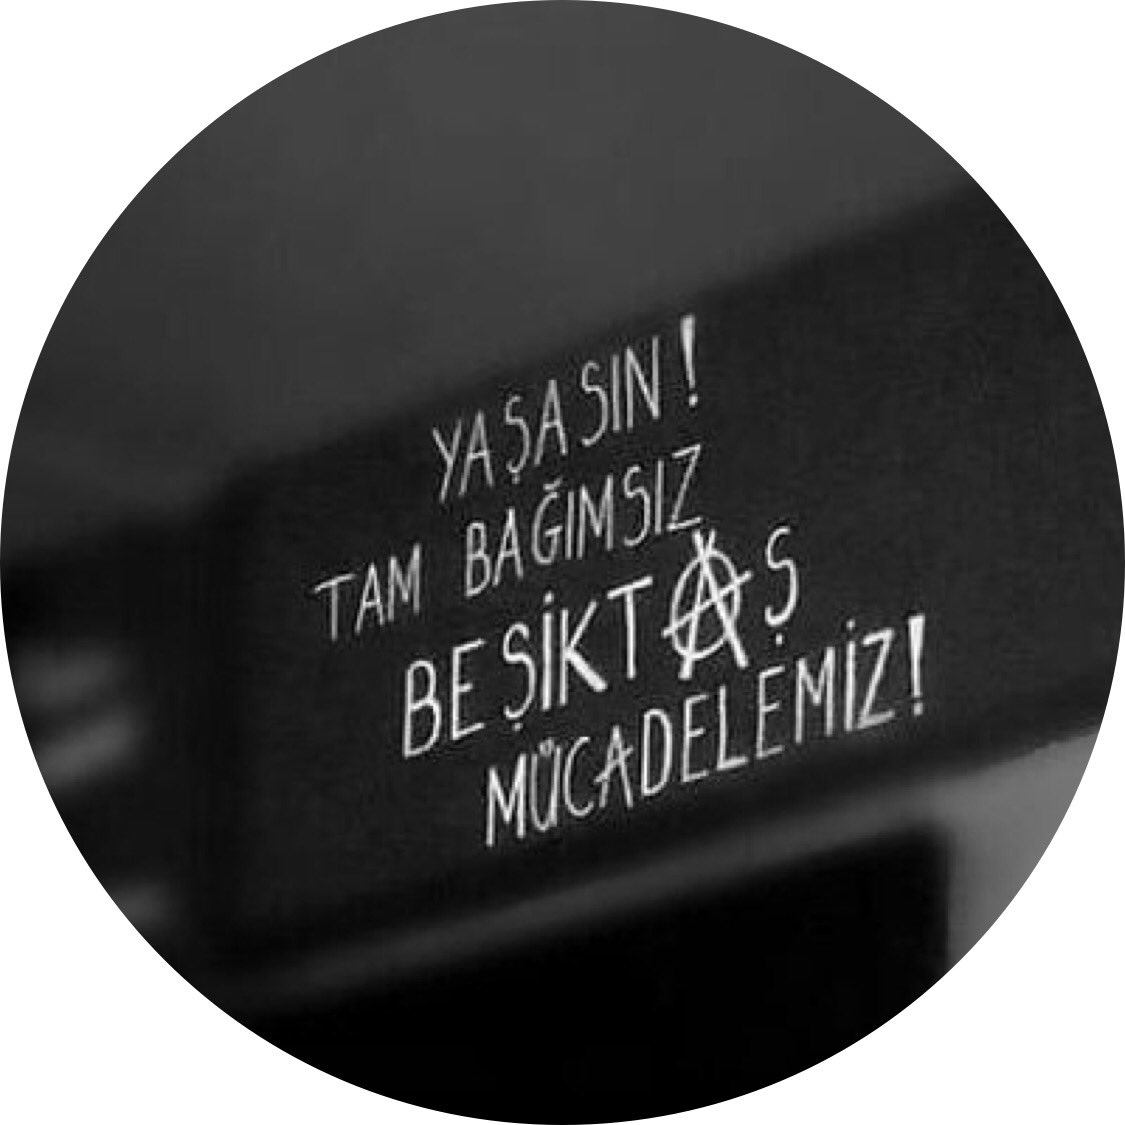 Yaşasın tam bağımsız Beşiktaş mücadelemiz! #BeşiktaşınMaçıVar